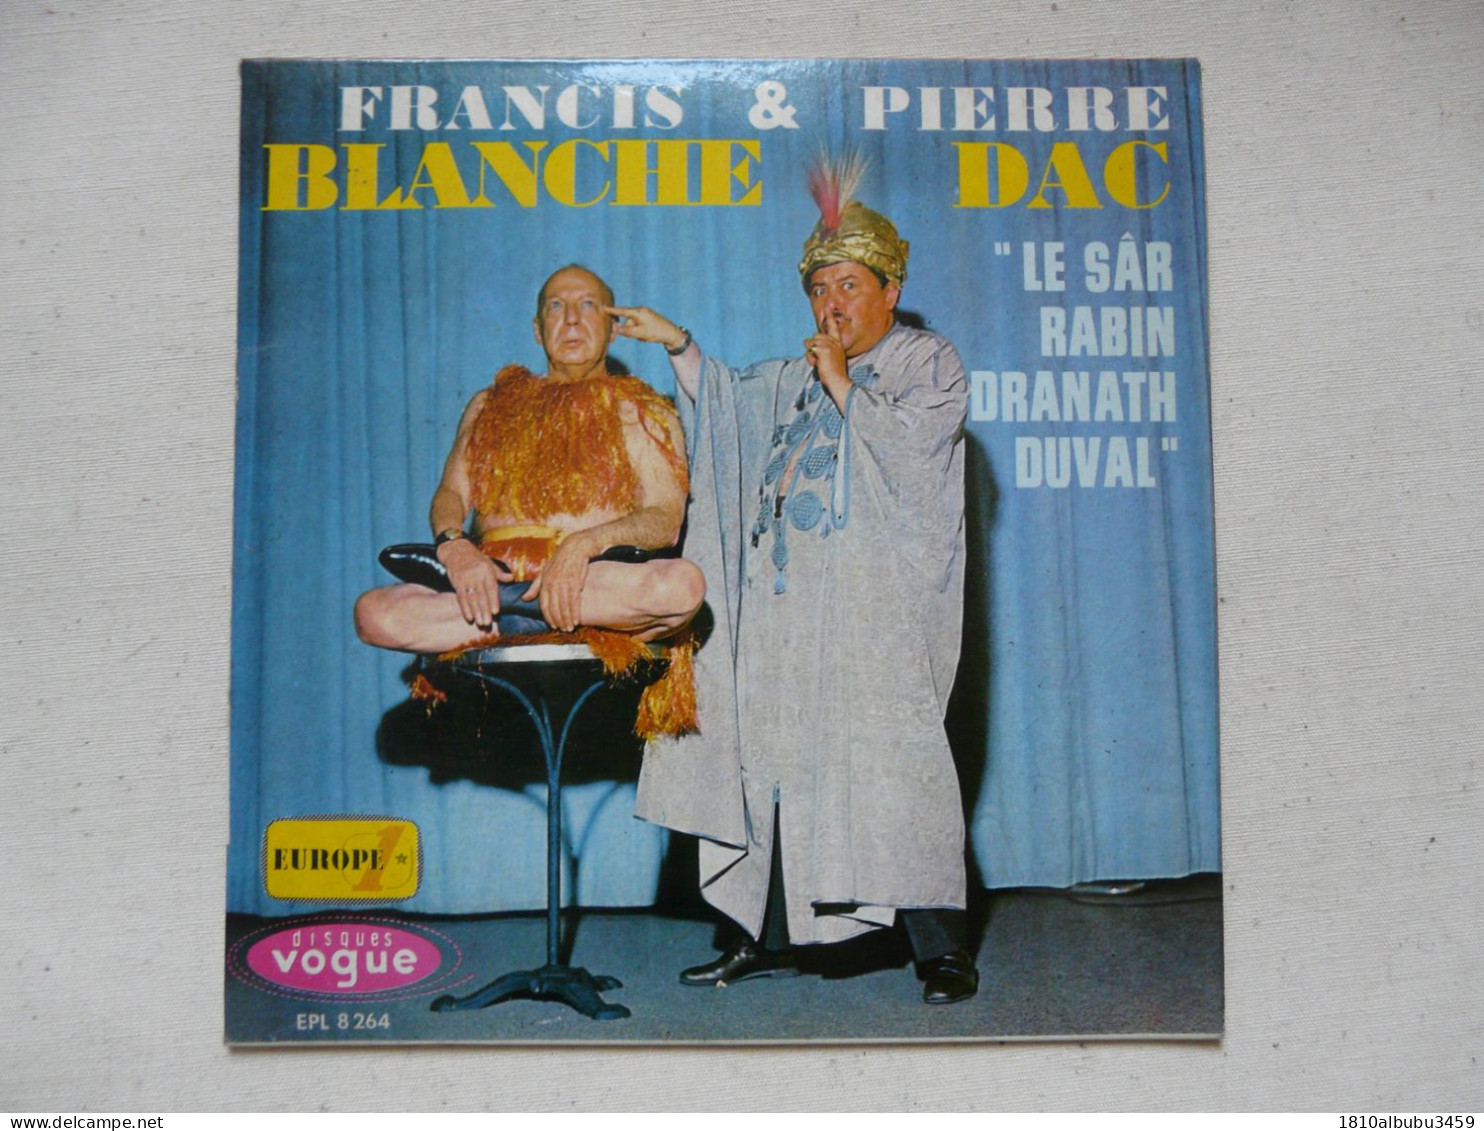 VINYLE - 45 T : FRANCIS BLANCHE & PIERRE DAC - "Le SAR RABIN DRANATH DUVAL" - Collectors